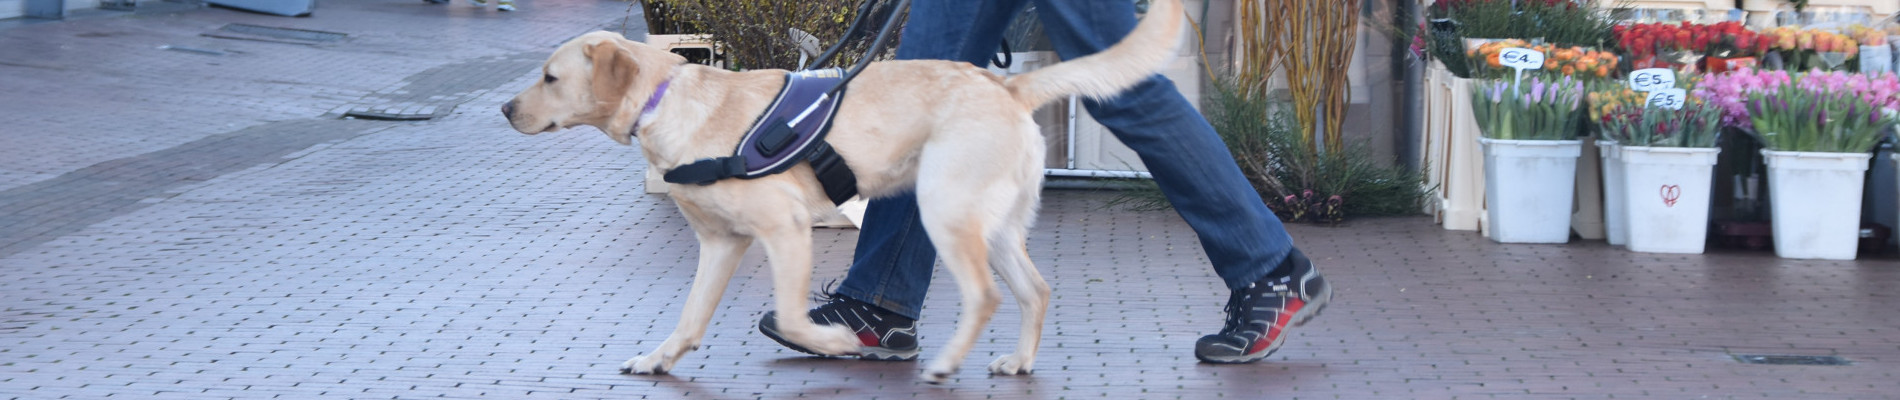 Blindengeleidehond op straat